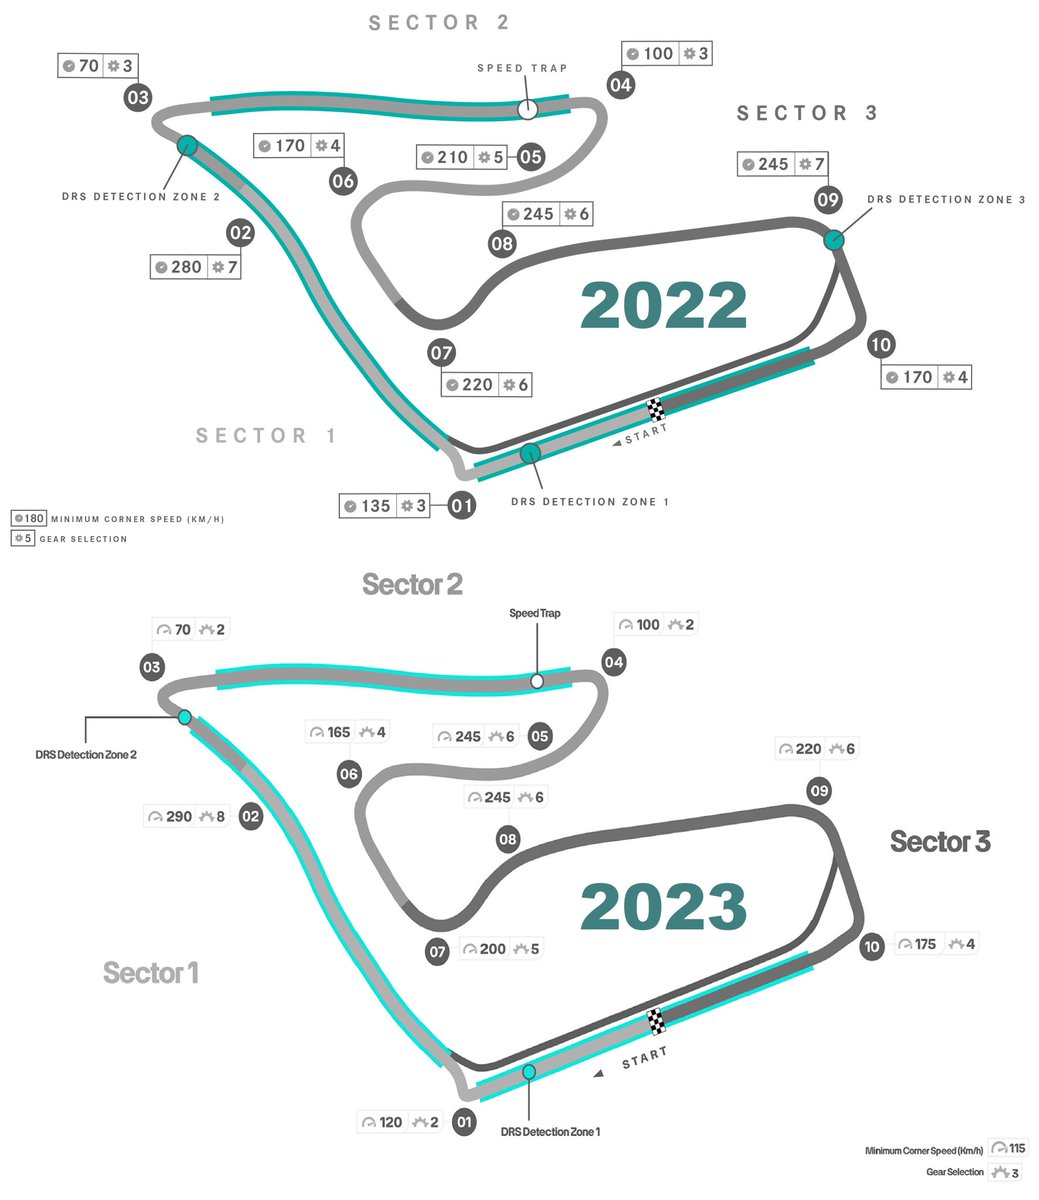 Mercedes'in 2023 #AustrianGP için viraj hızları ve vites geçiş Simülatör çalışması: